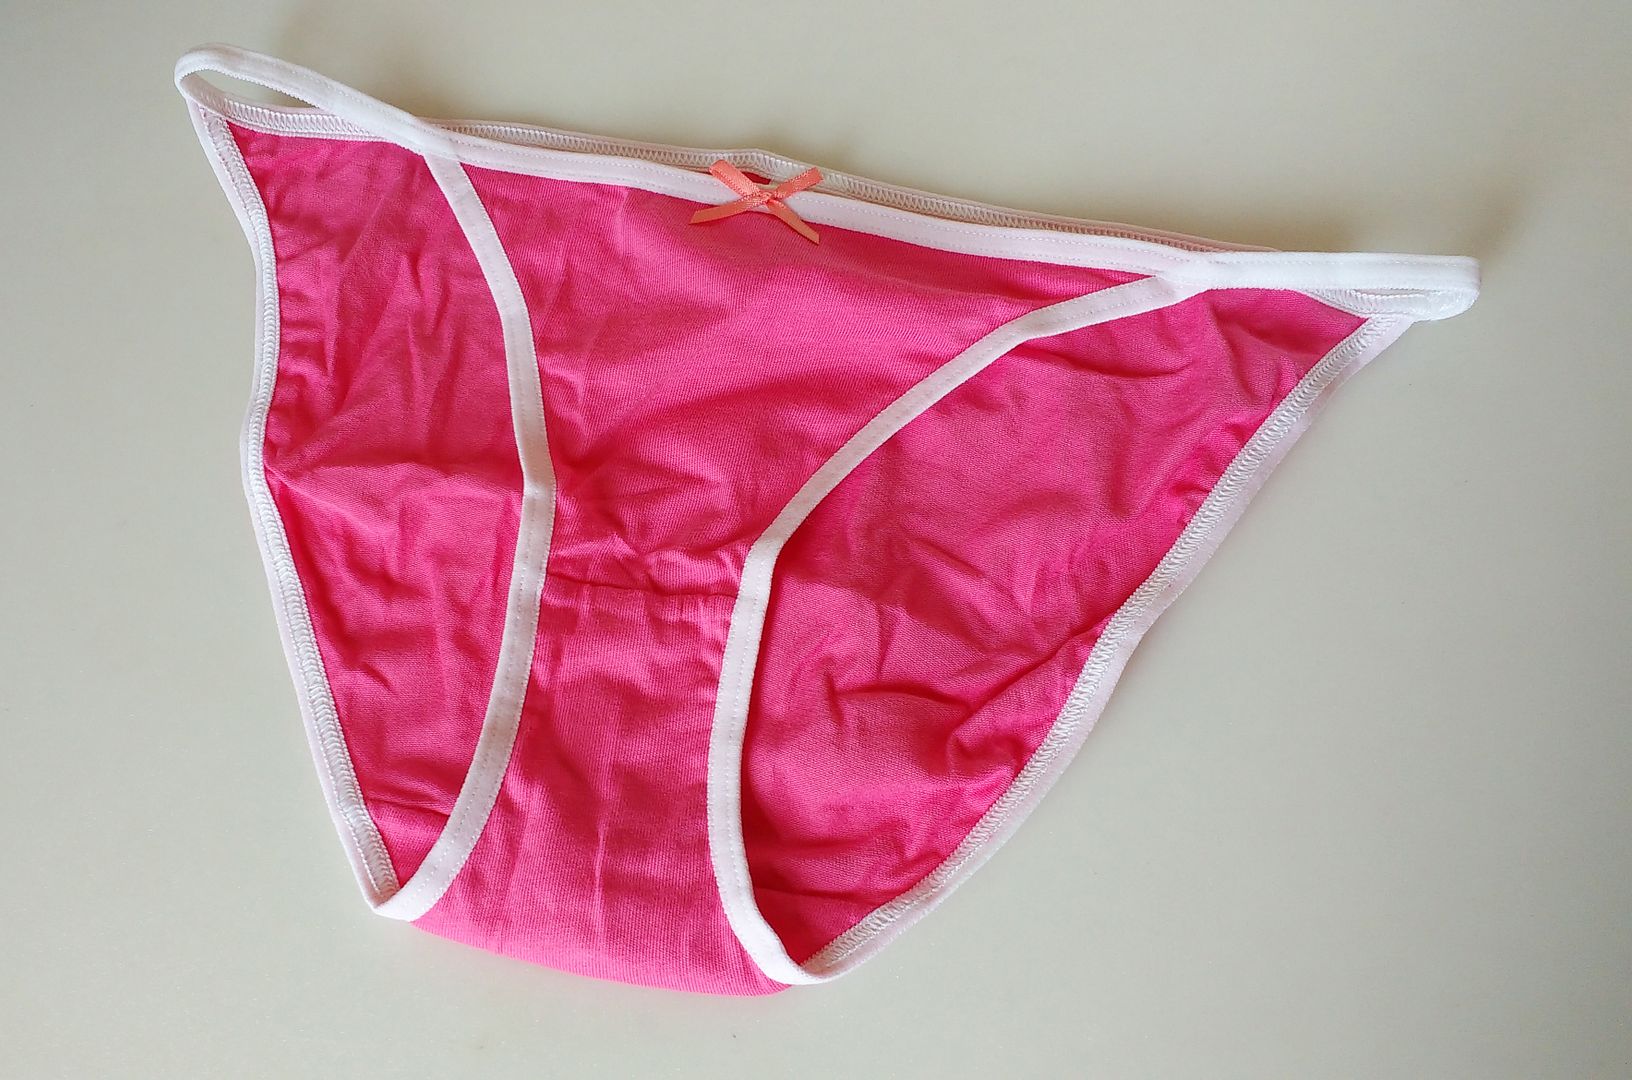 Candy Pink String Bikini Panties Tanga Knickers Ladies Uk 6 8 Girls 12 15yrs Ebay 